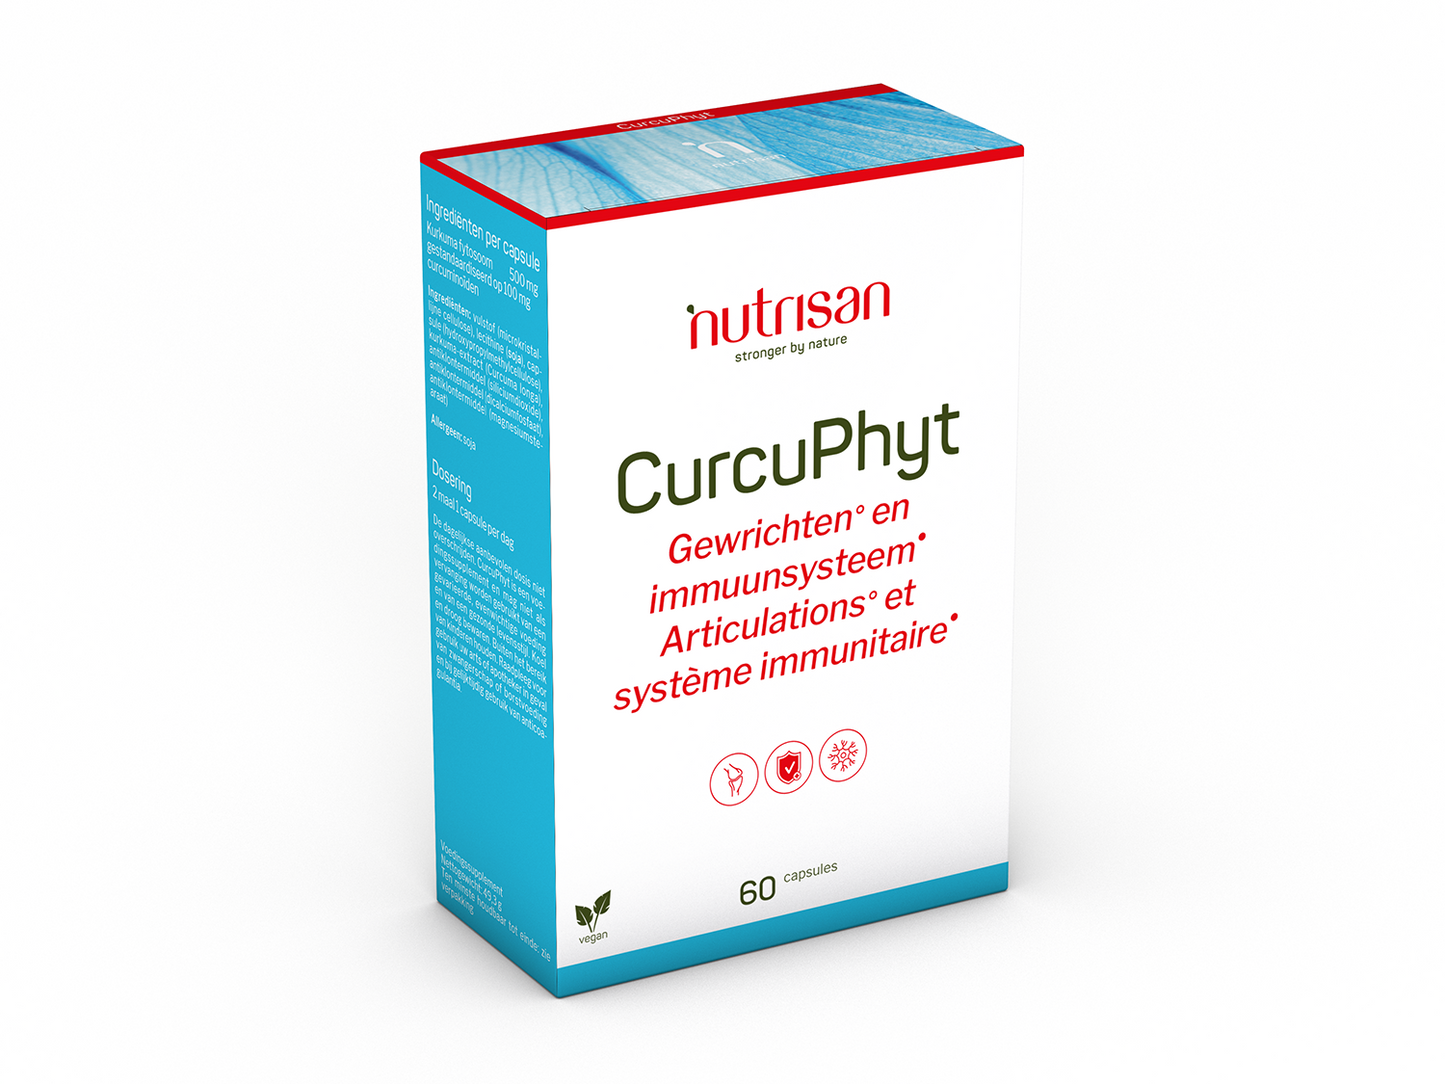 Nutrisan CurcuPhyt - Supplement voor gewrichten en immuunsysteem